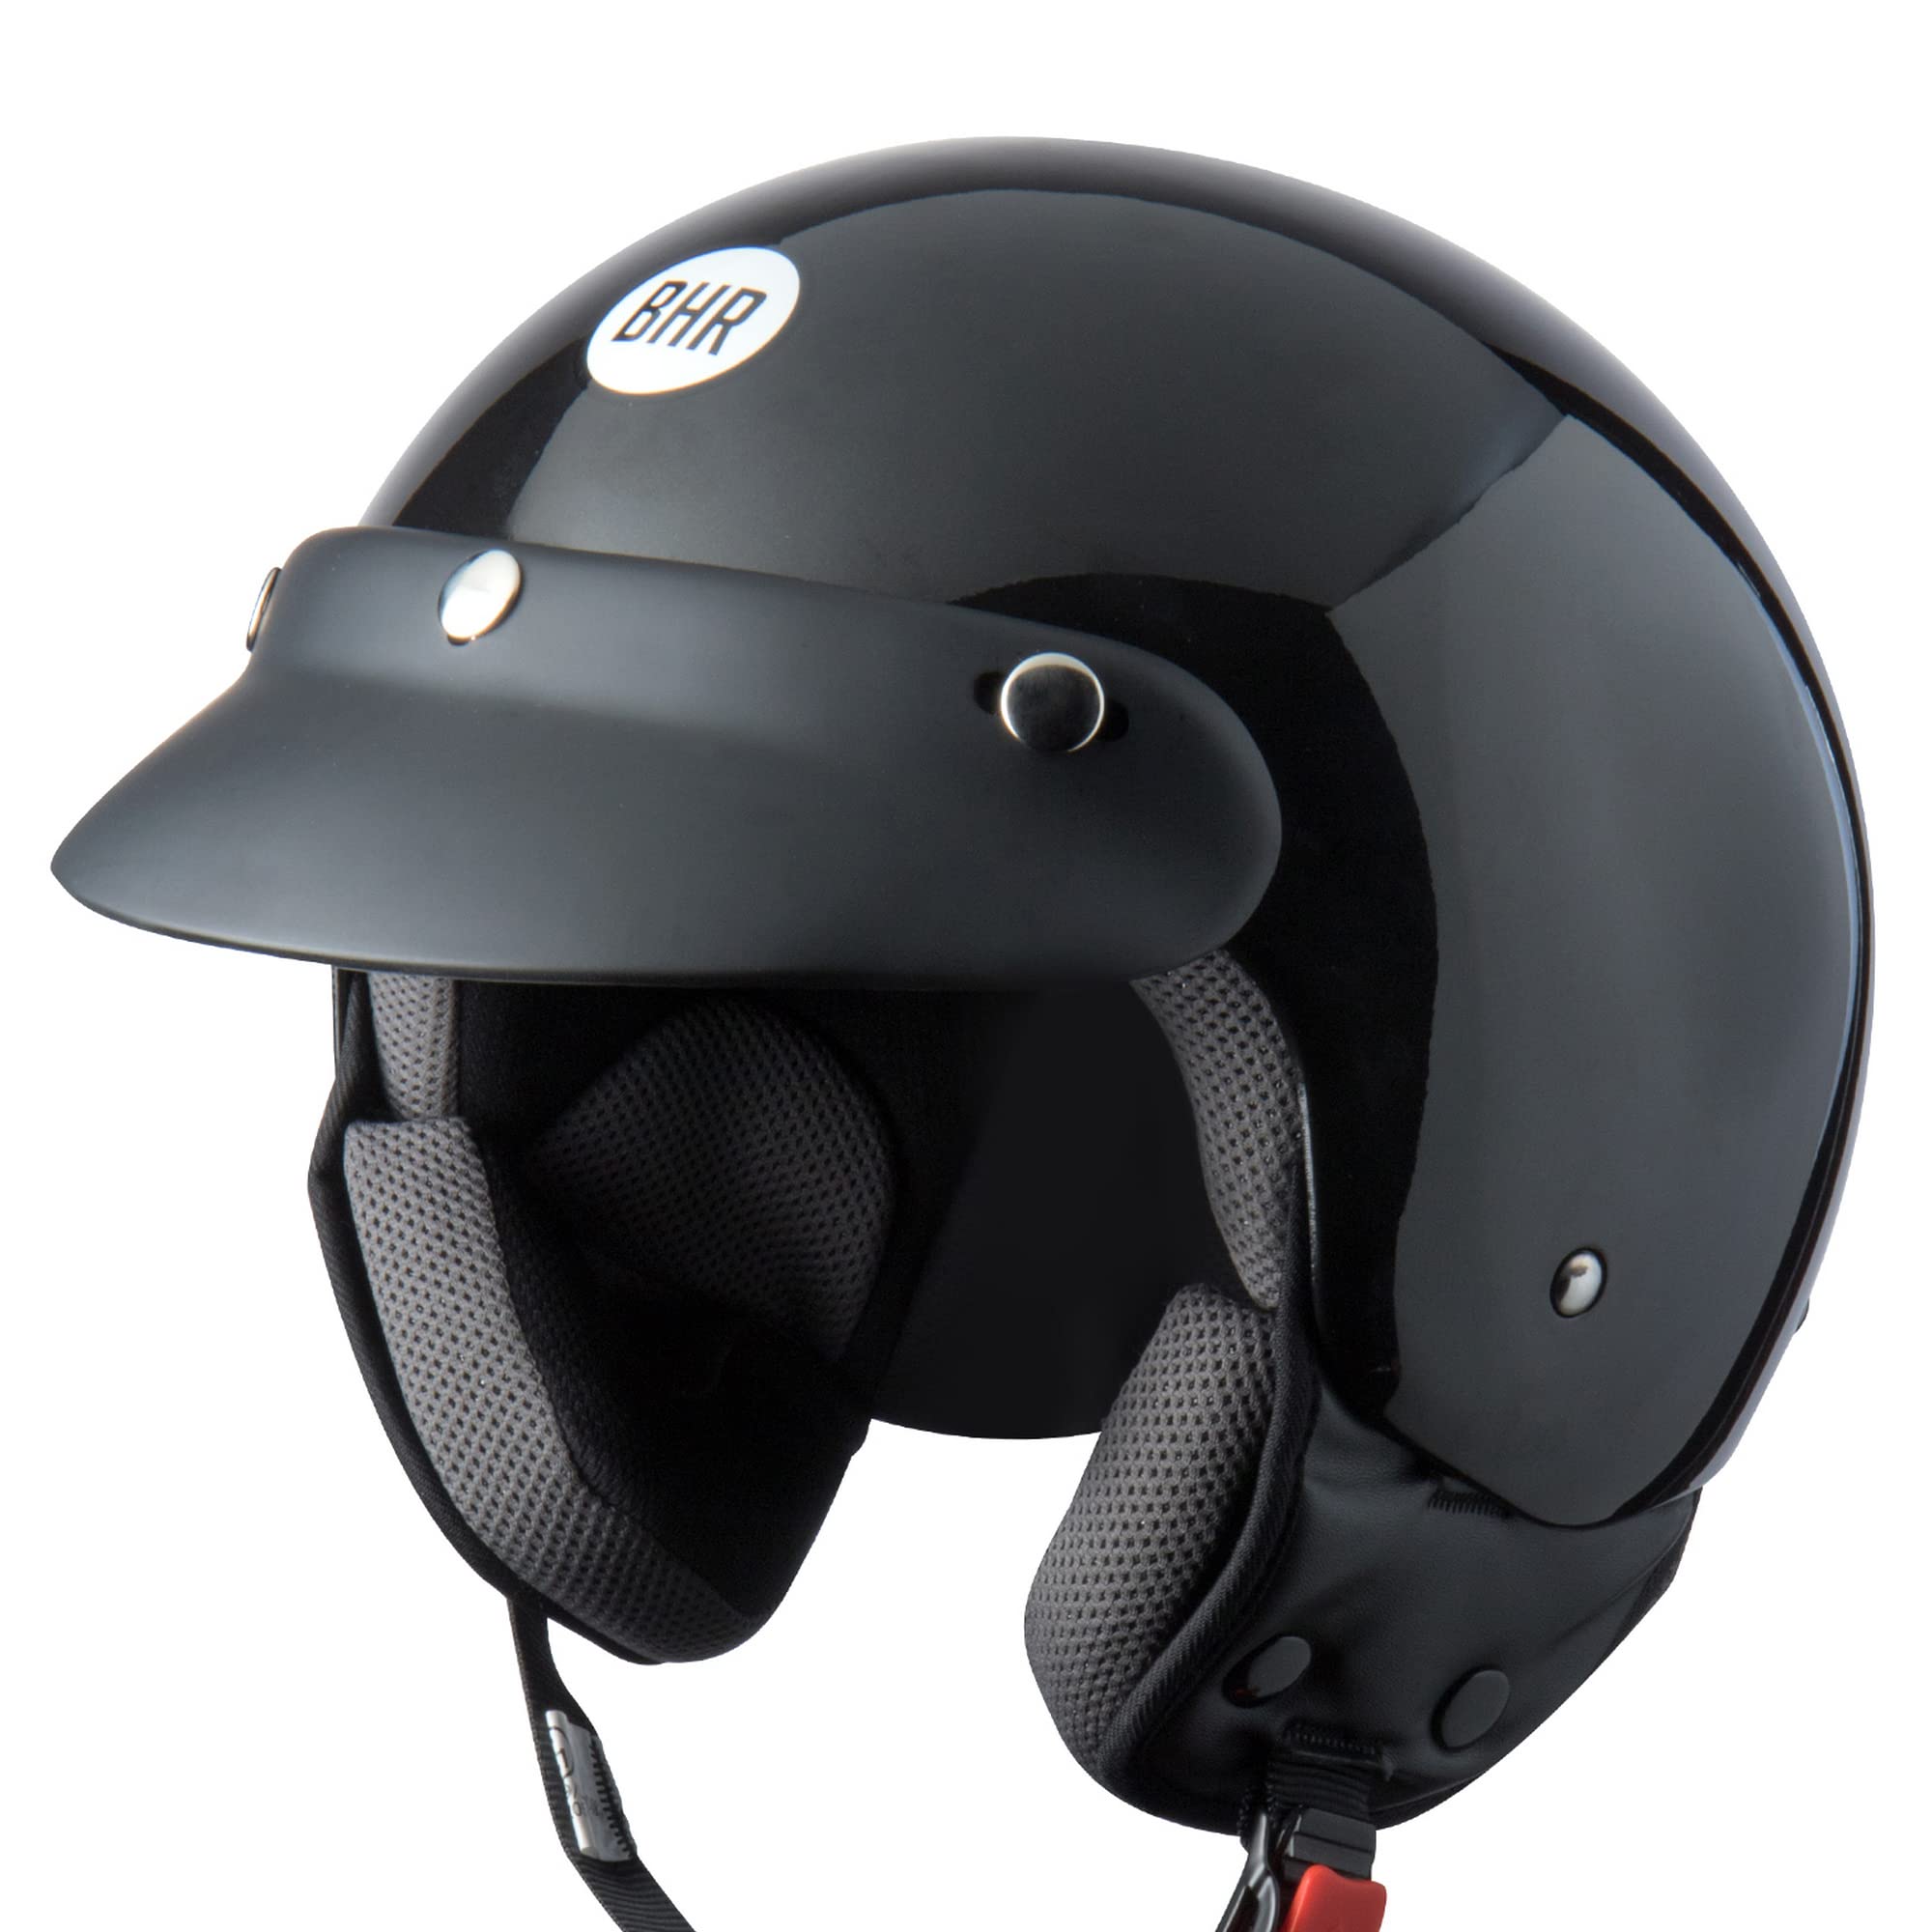 BHR Demi-Jet Helm 803 SIMPLY, Praktischer Rollerhelm mit ECE-Zulassung, Motorrad-Jet-Helm mit abnehmbarem Gesichtspolster, SCHWARZ METALLIC, L